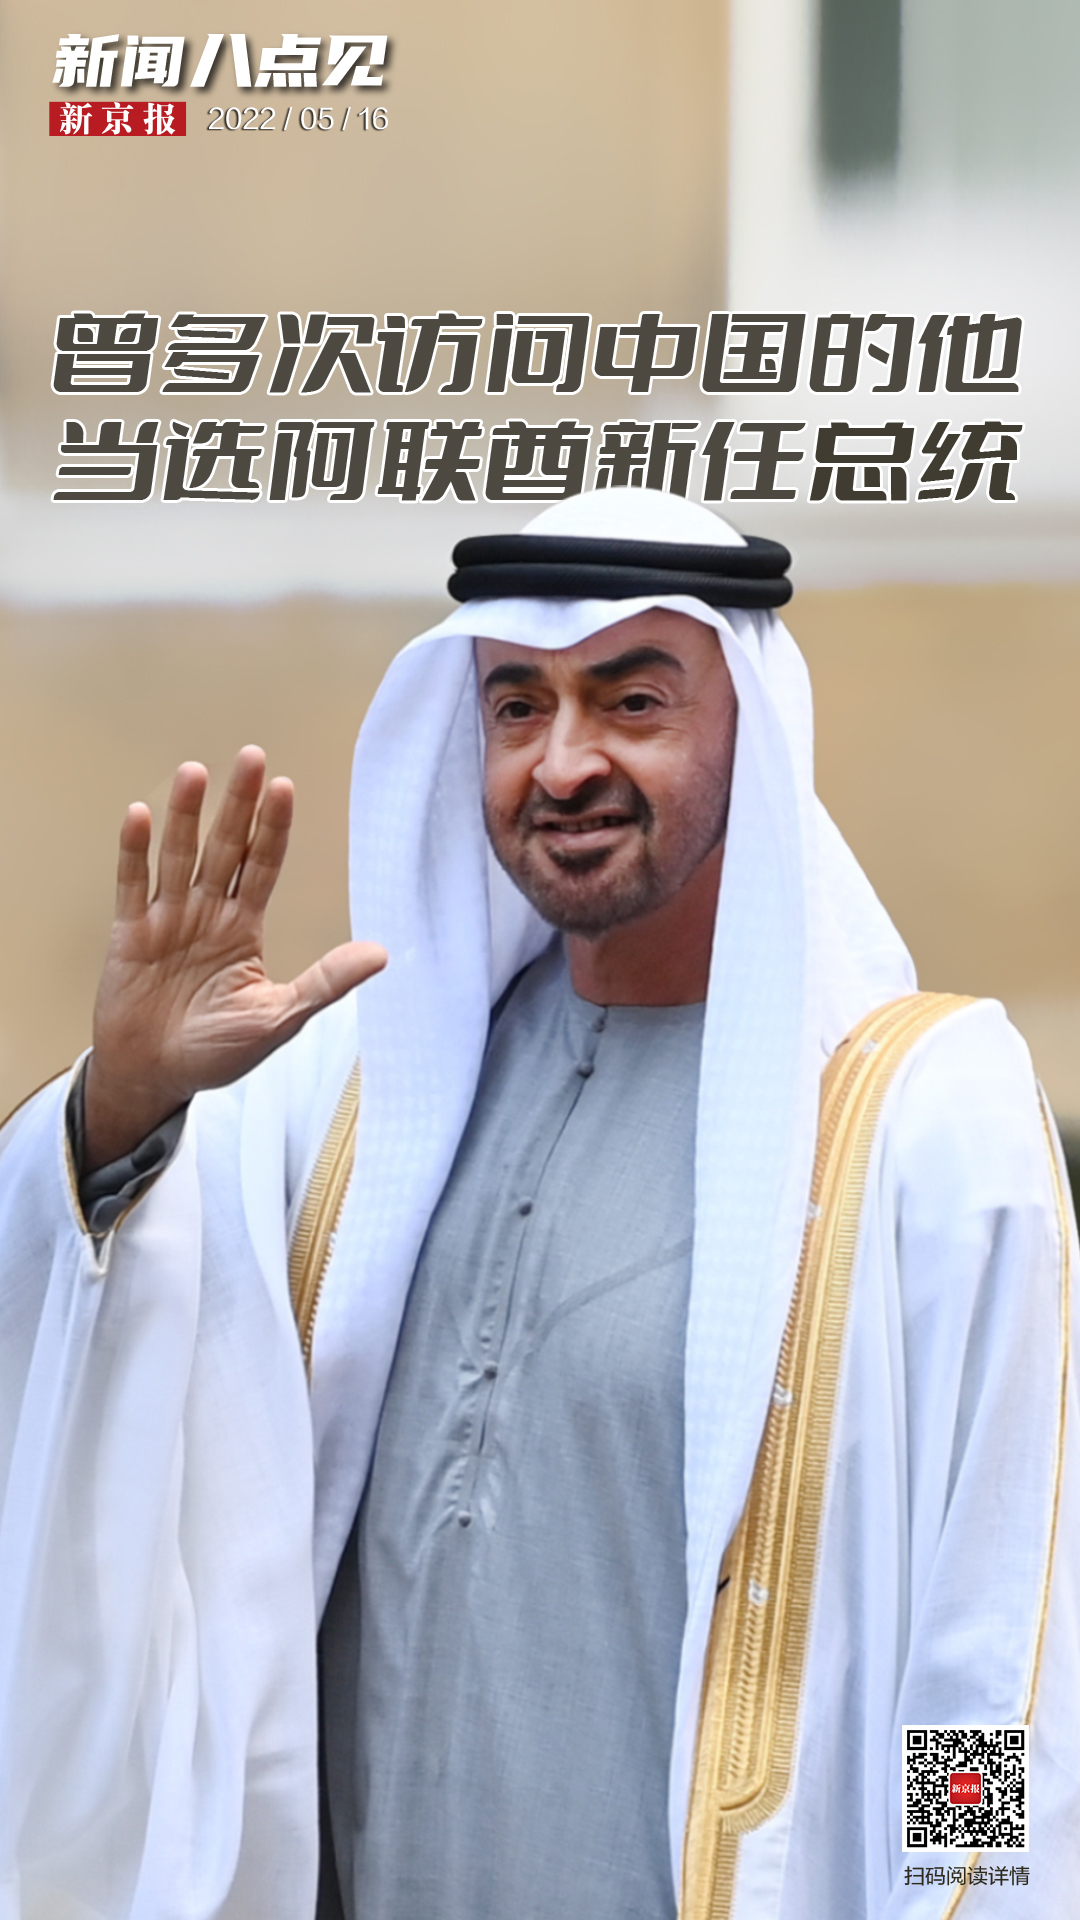 新闻8点见丨曾多次访问中国的穆罕默德当选阿联酋新任总统